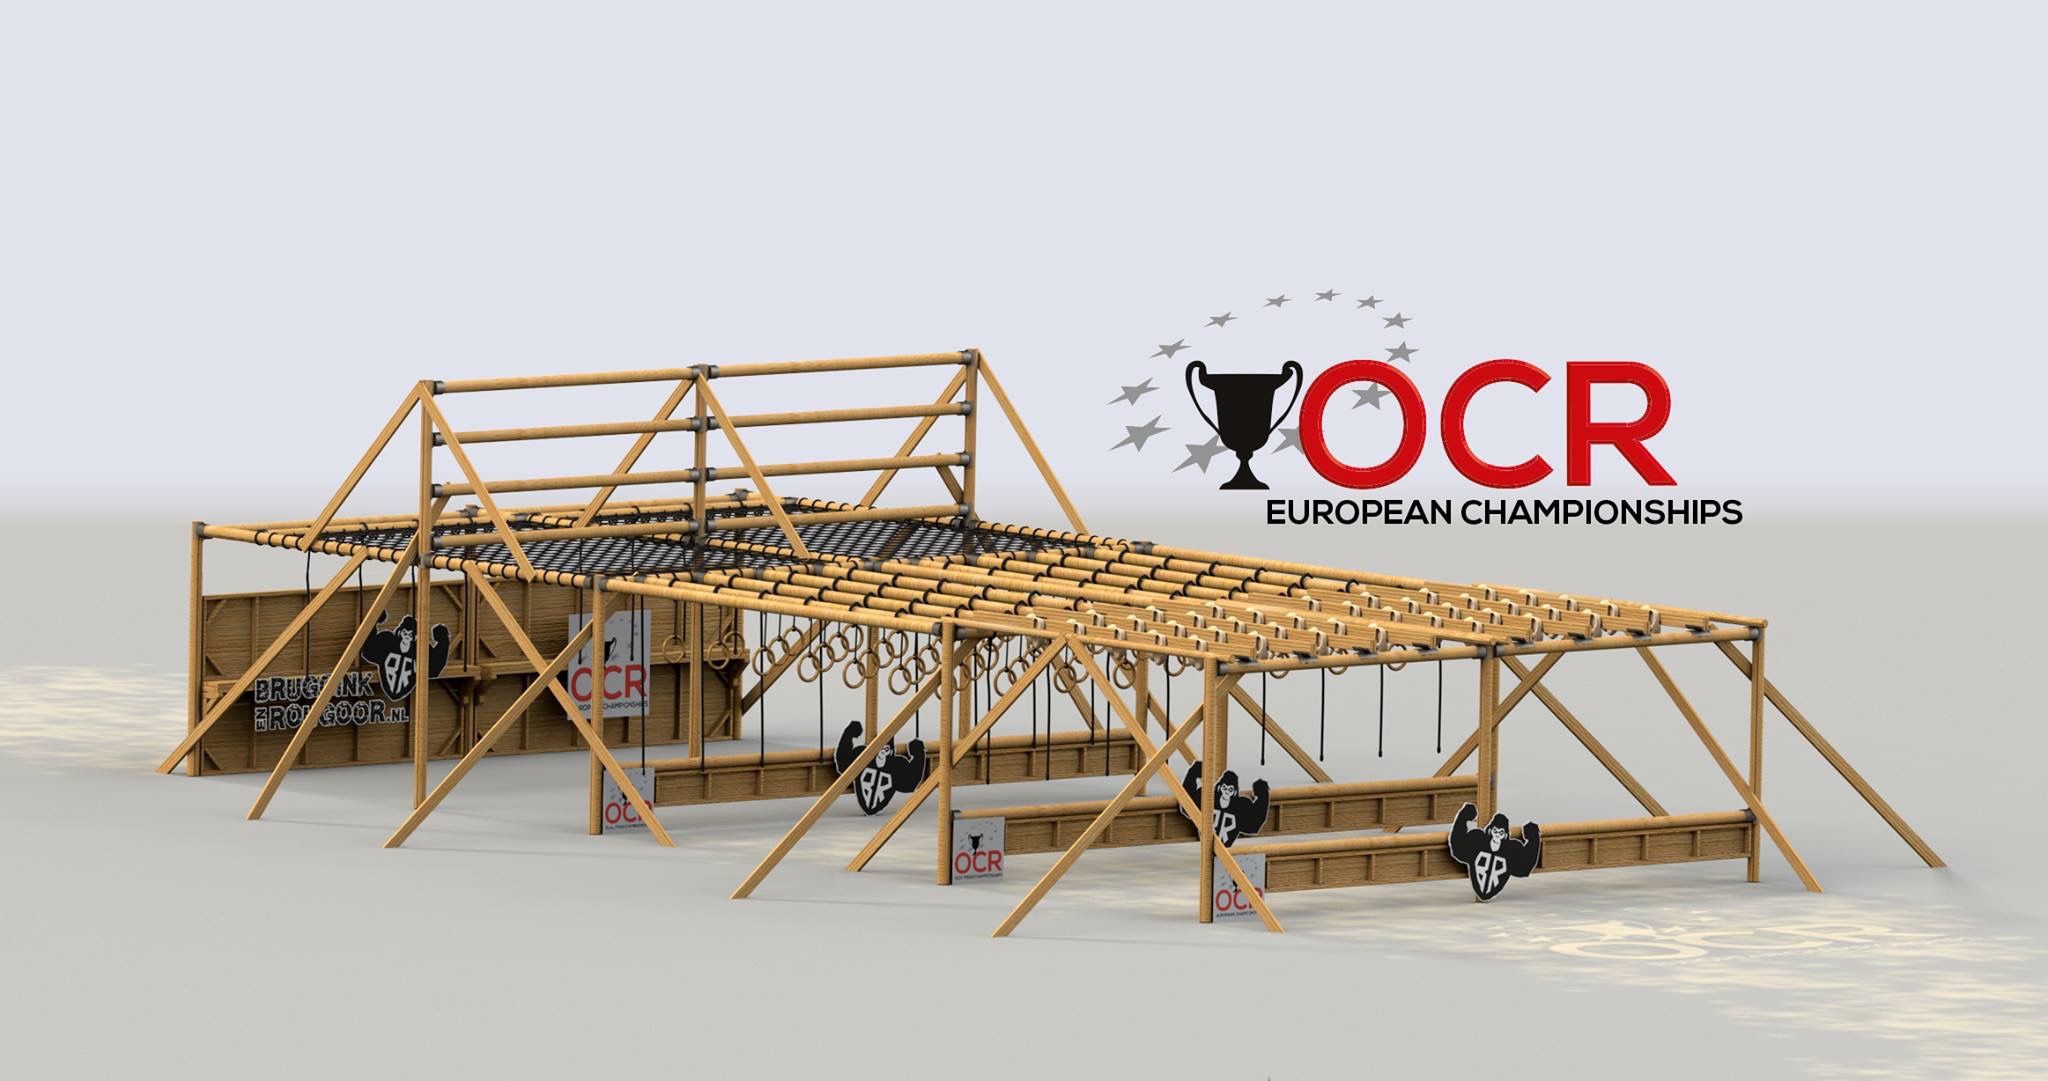 ASICS Frontrunner OCR European Championship